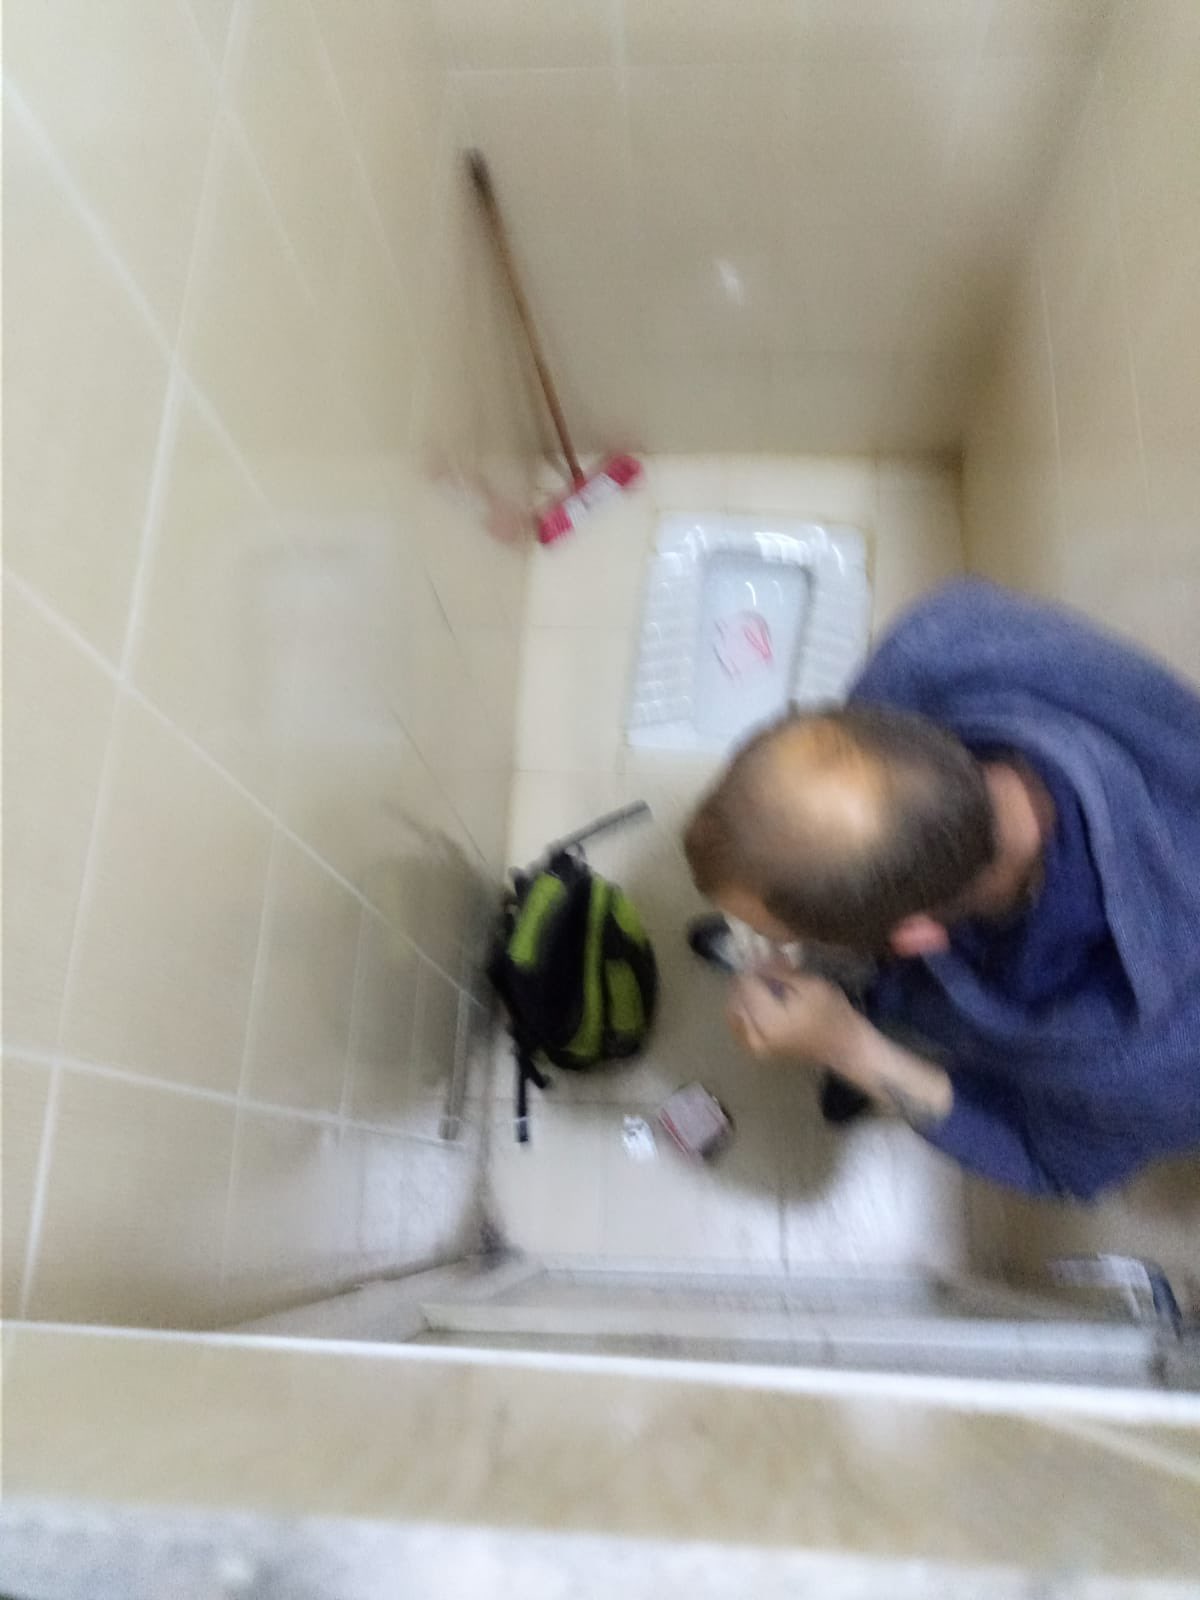 Ümit Özdağ sığınmacıların cami tuvaletinde uyuşturucu kullandıklarını iddia etti Paylaşımı eleştirilere neden oldu